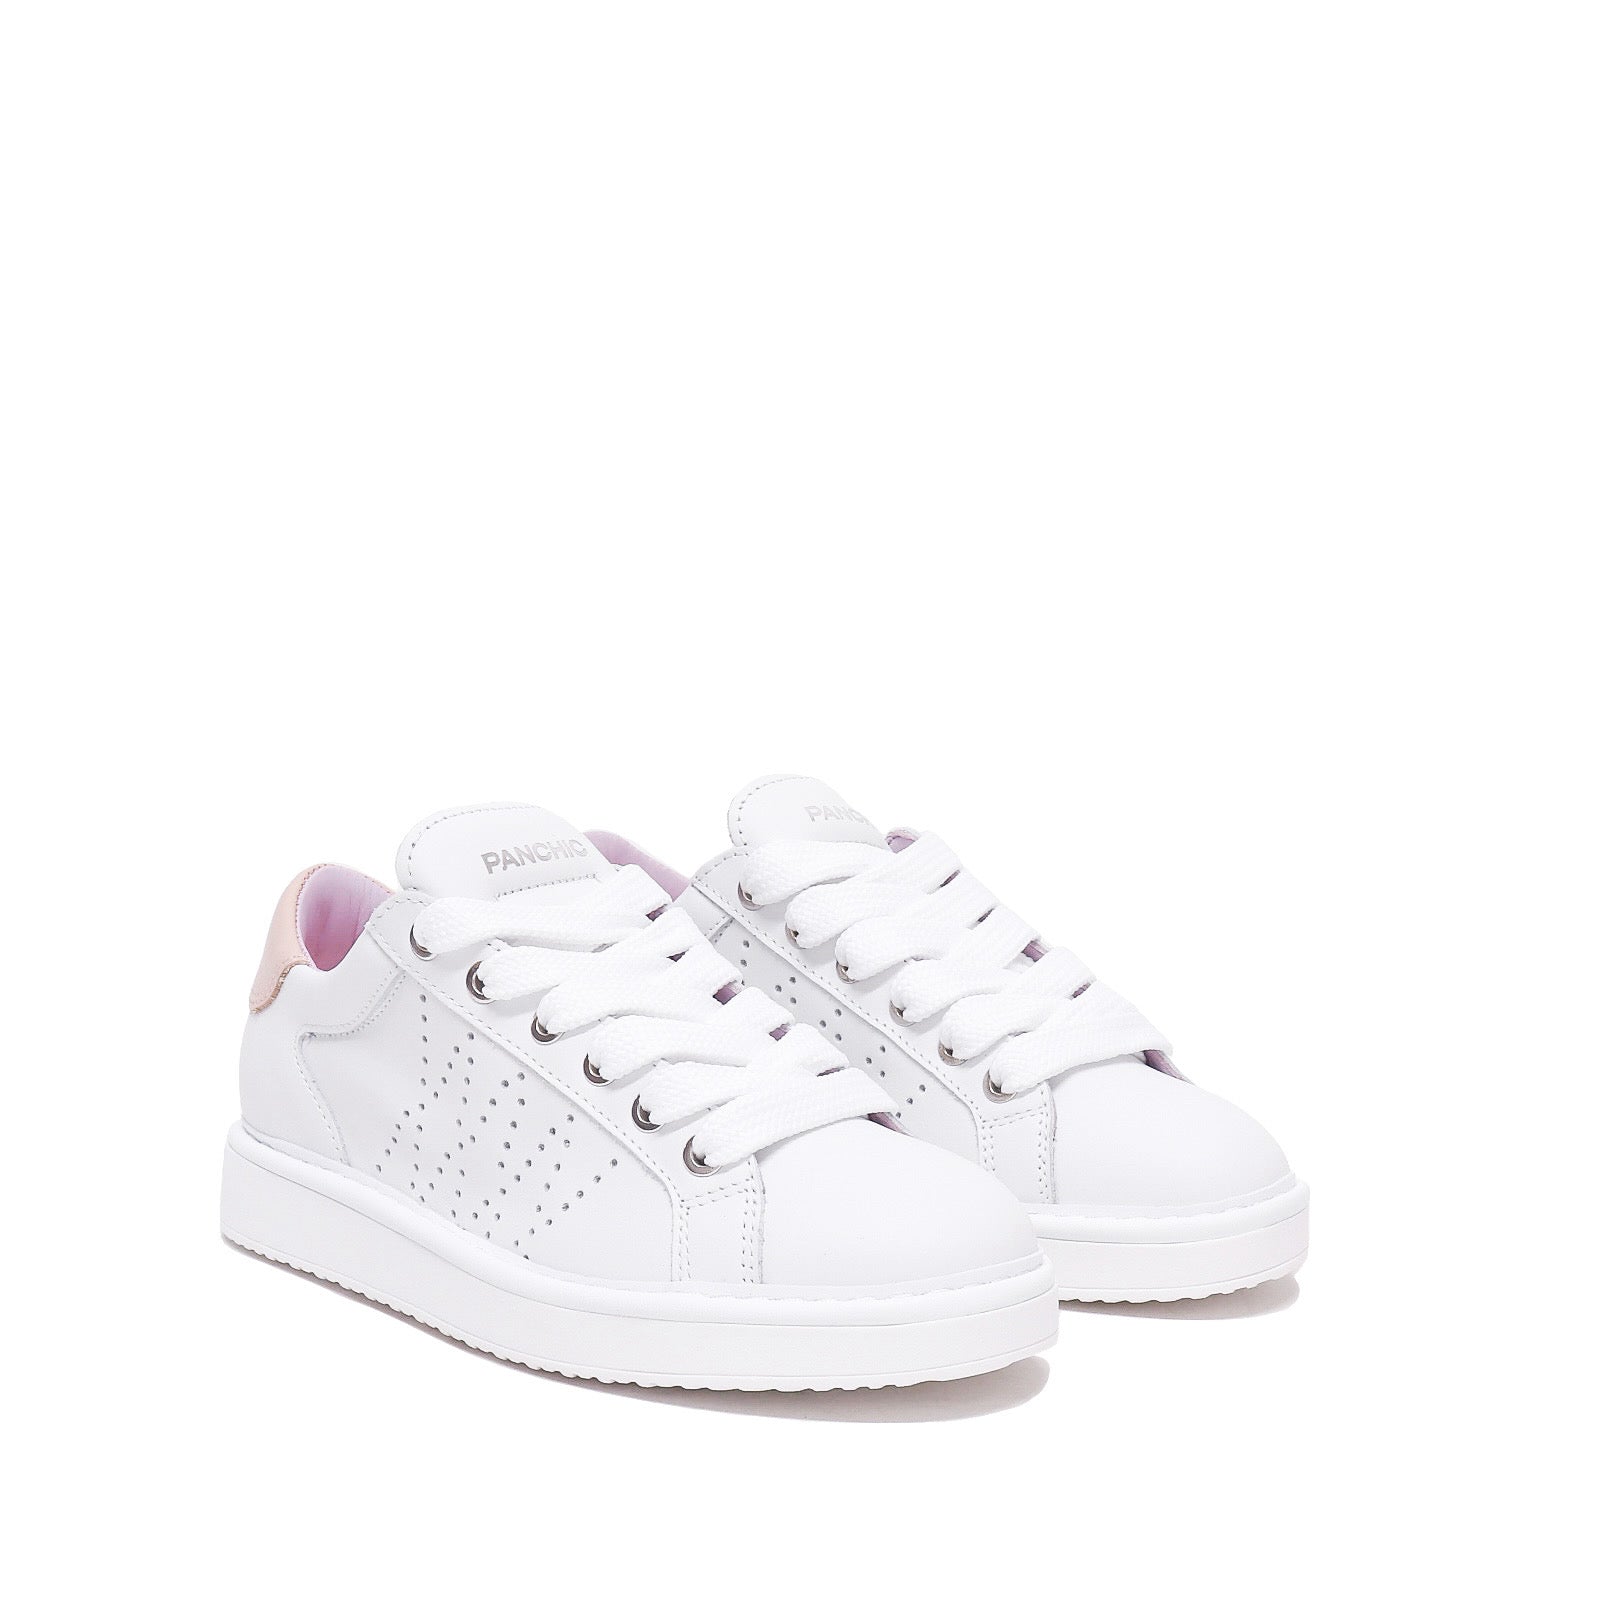 Panchic Sneaker White/Pink W